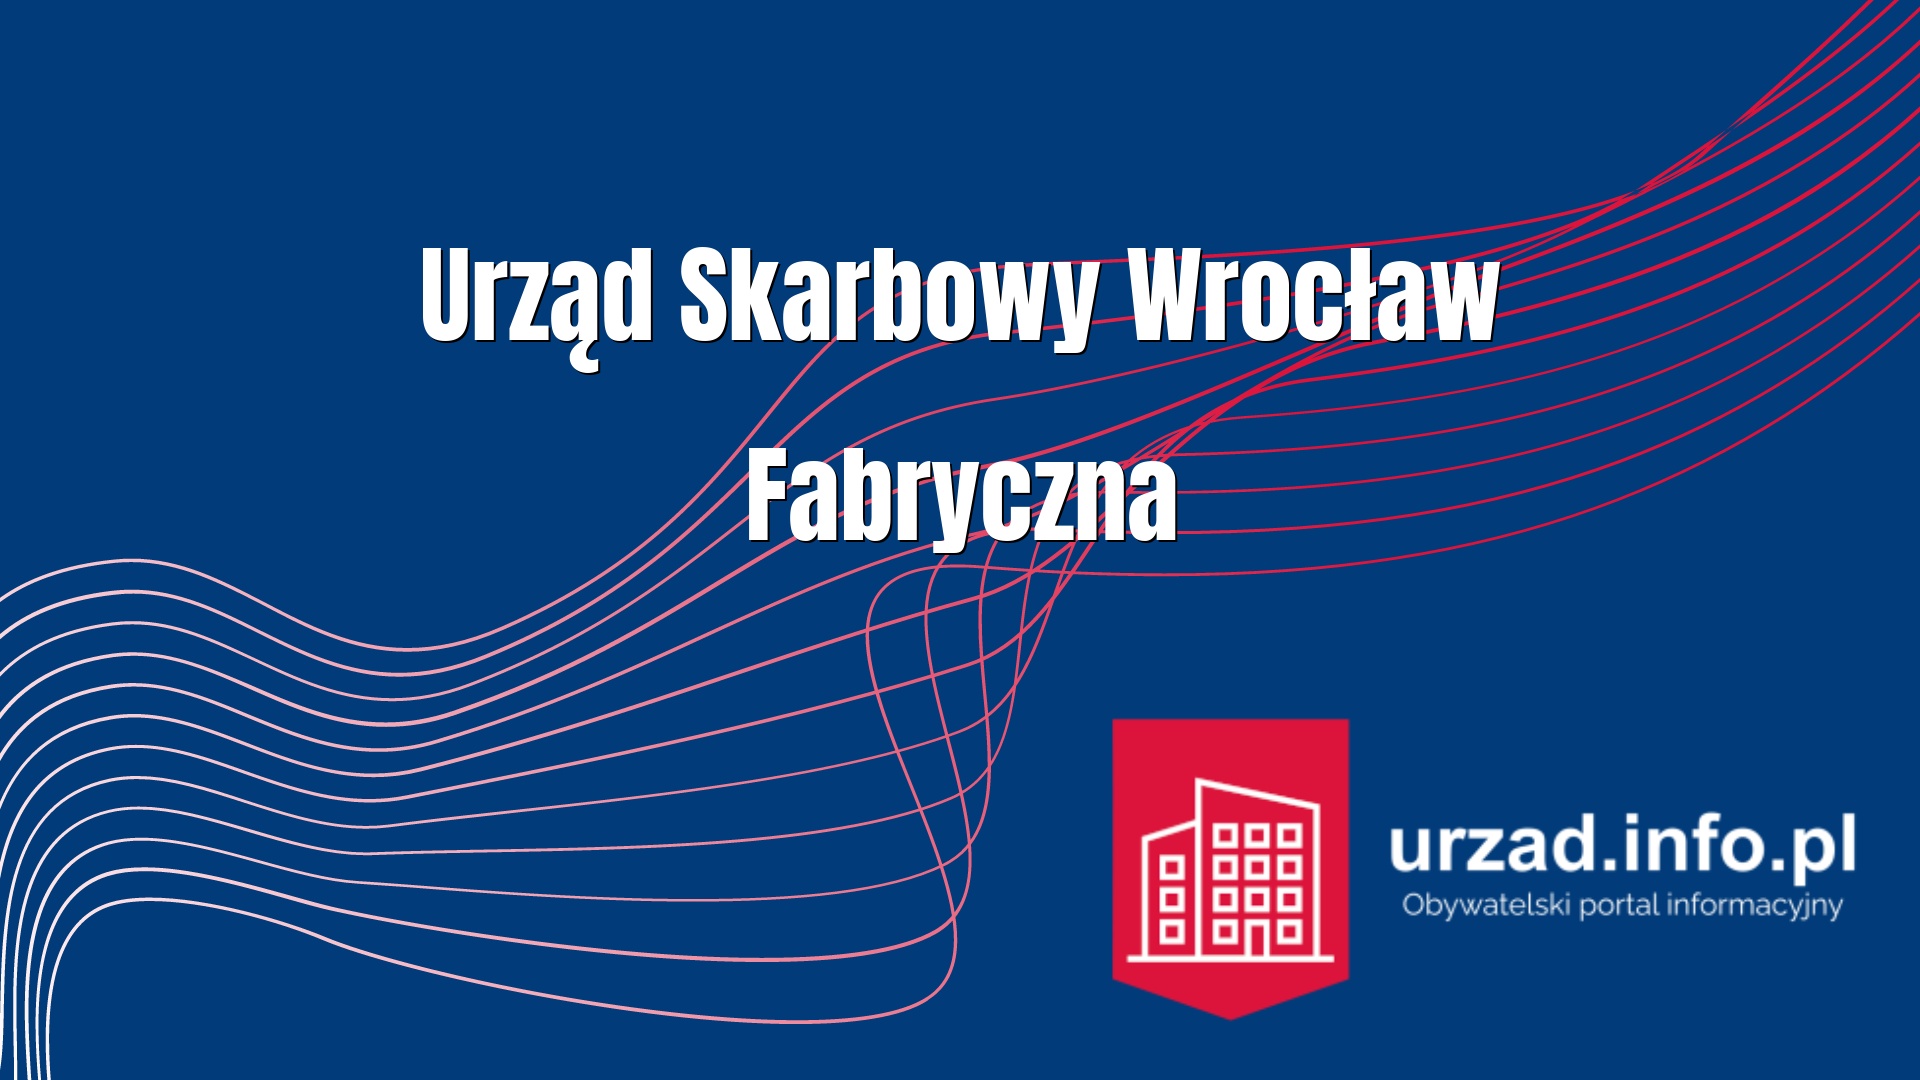 Urząd Skarbowy Wrocław Fabryczna